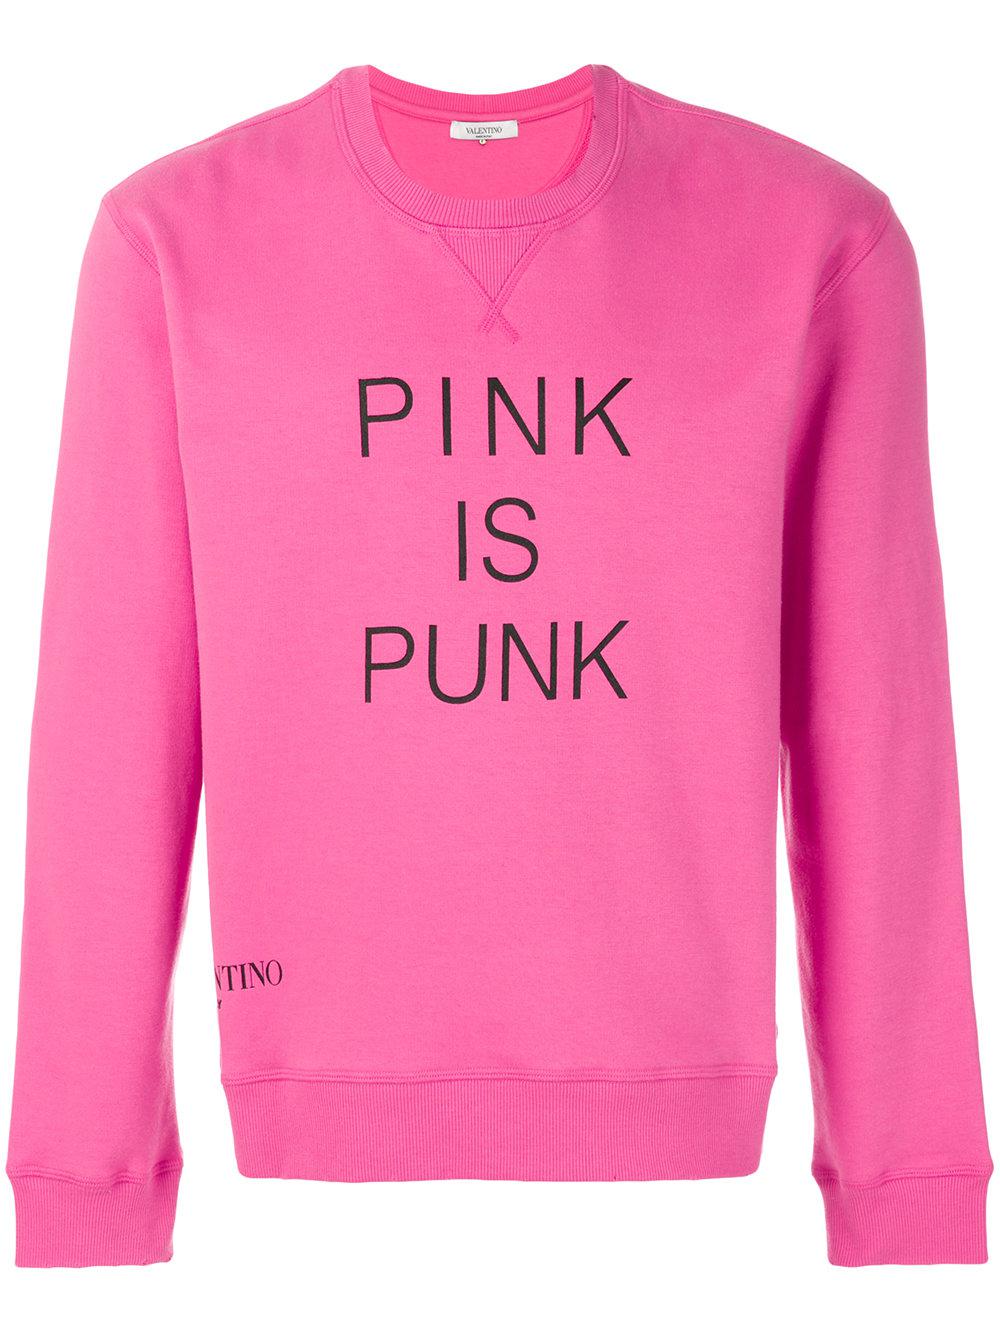 Valentino Pink Pink Is Punk Sweatshirt Men